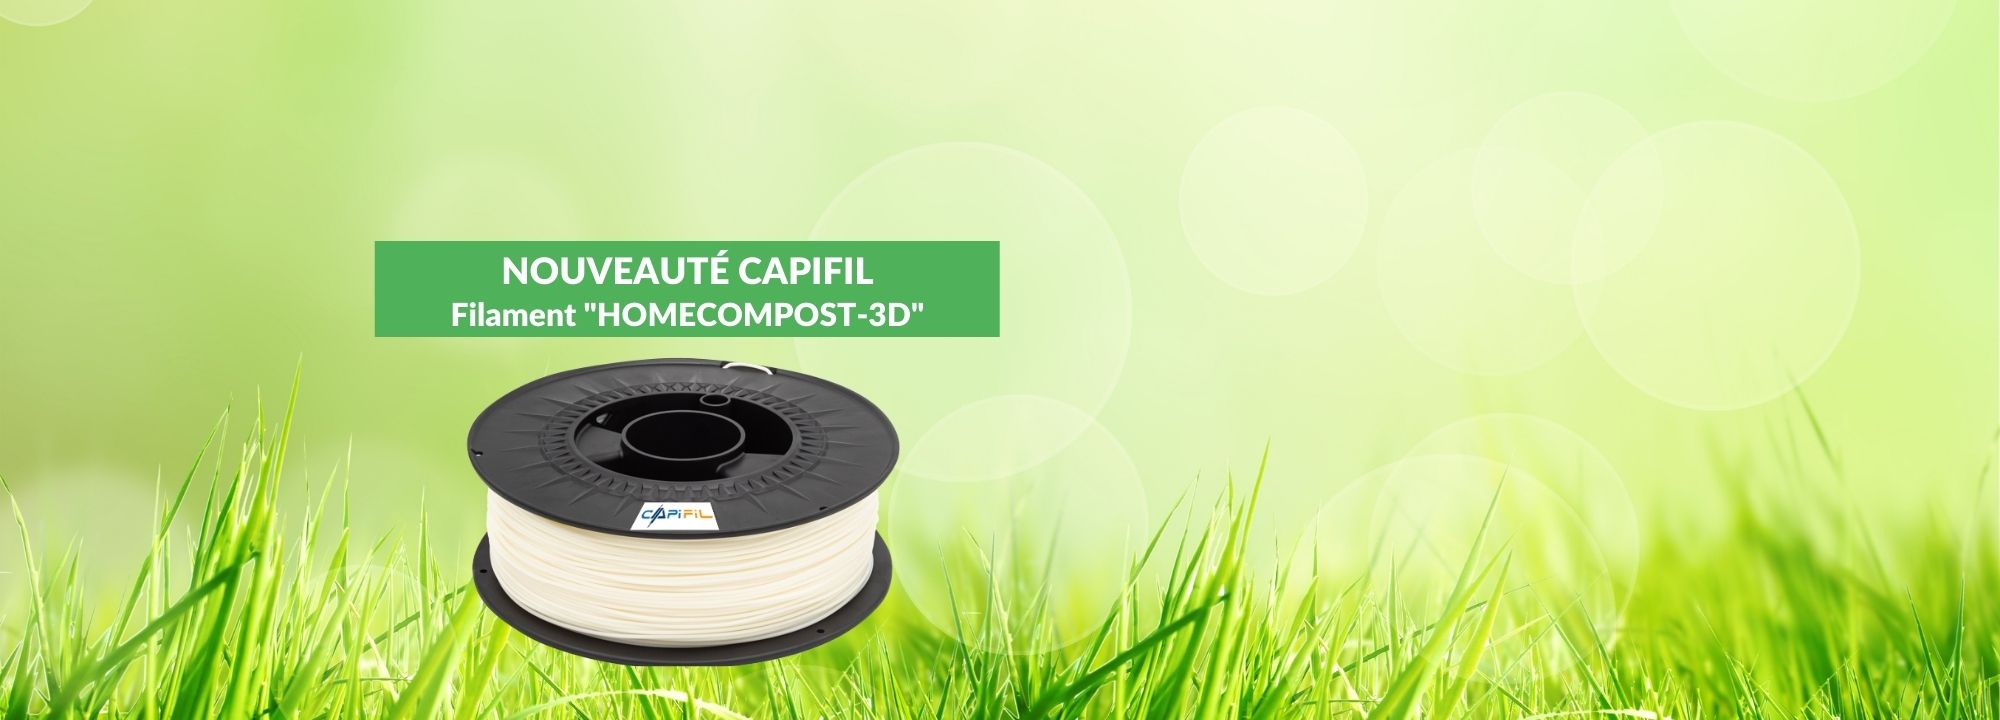 Capifil - Slider home - Nouveau filament HOMECOMPOST-3D